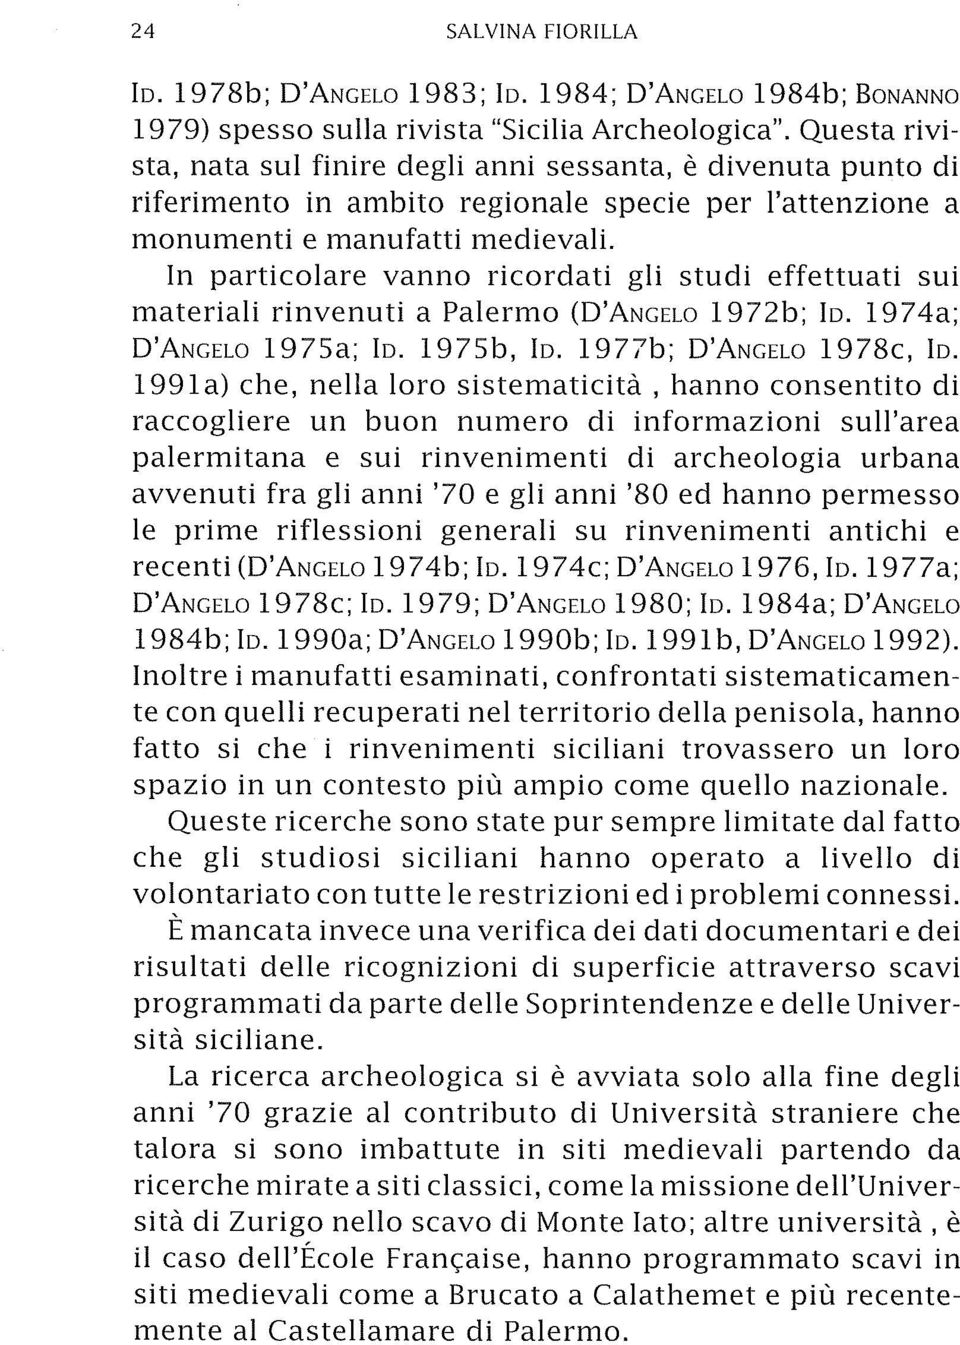 In particolare vanno ricordati gli studi effettuati sui materiali rinvenuti a Palermo (D'ANGELO 1972b; lo. 1974a; D'ANGELO 1975a; lo. 1975b, lo. 1977b; D'ANGELO 1978c, lo.